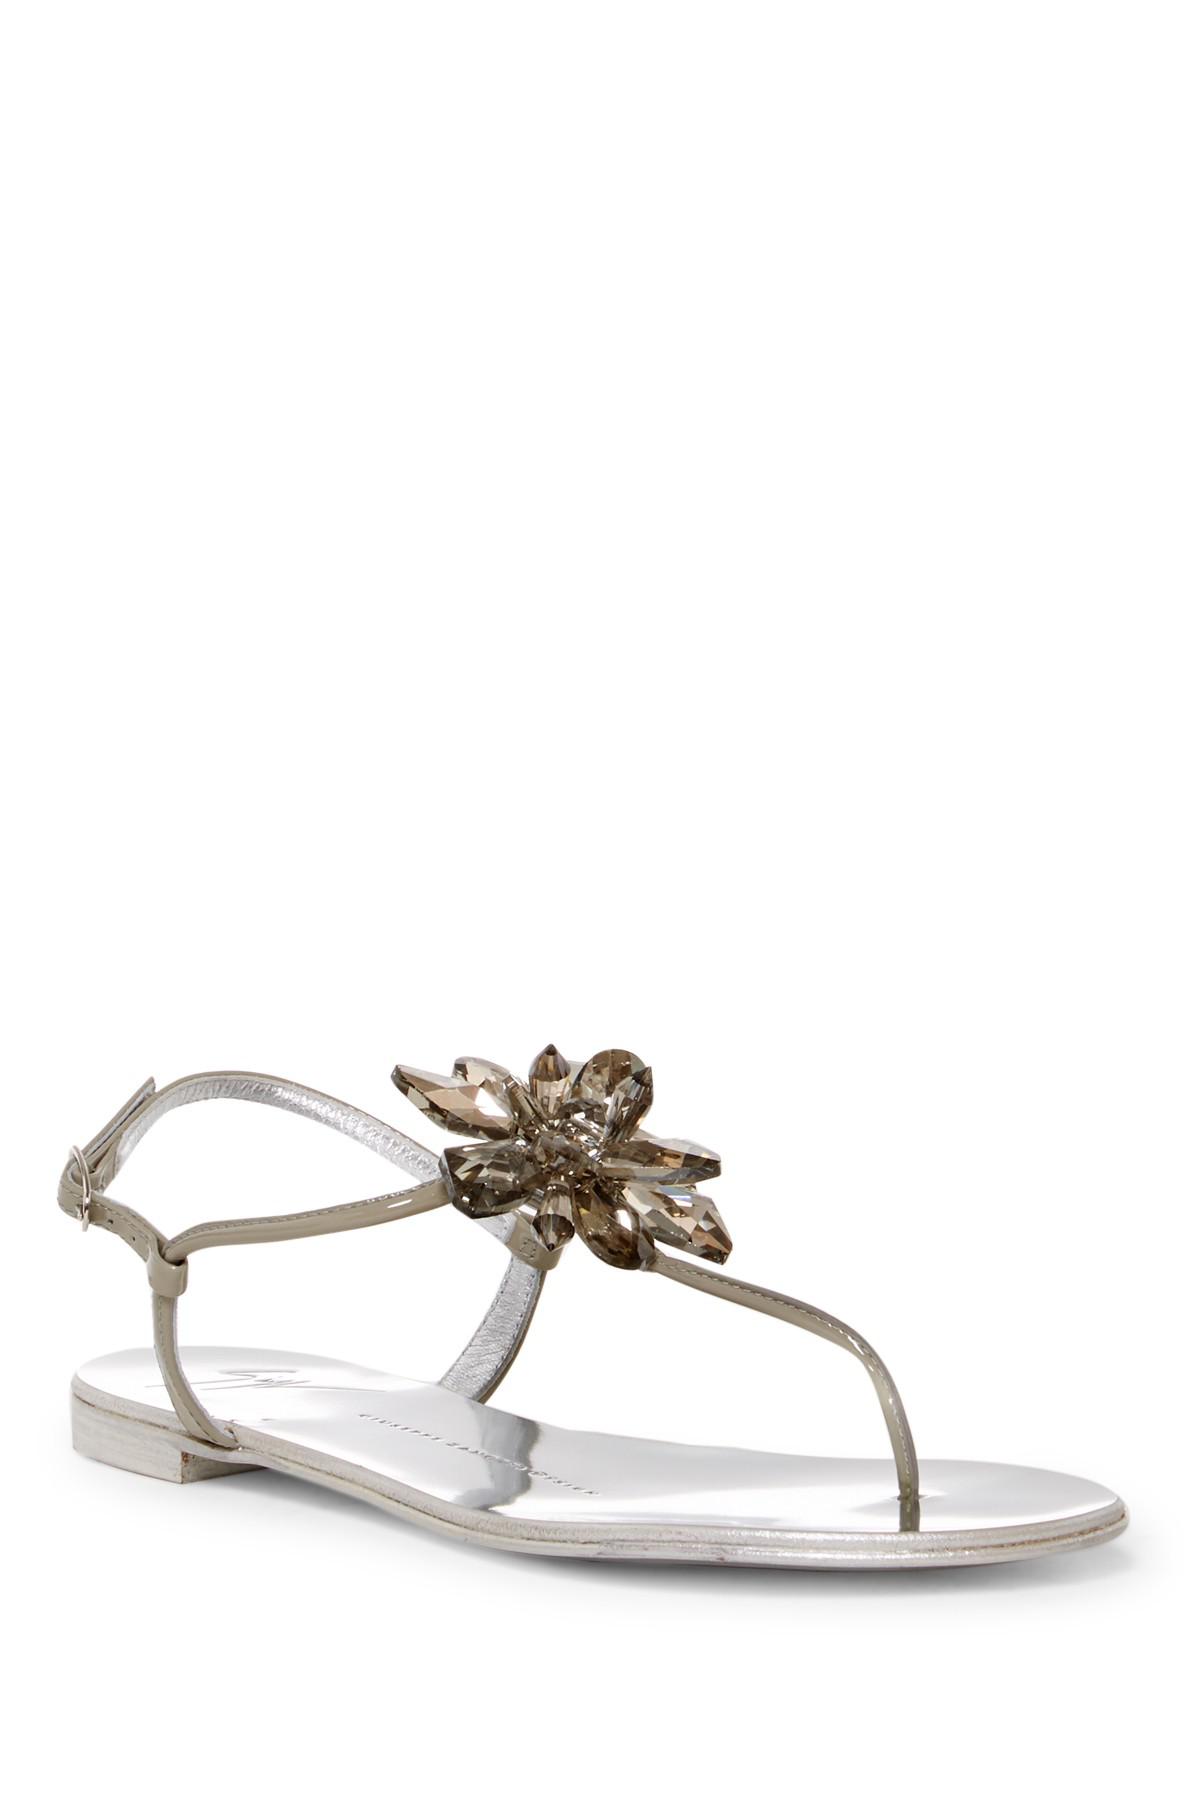 Lyst - Giuseppe zanotti Rock Crystal Flower Thong Sandal